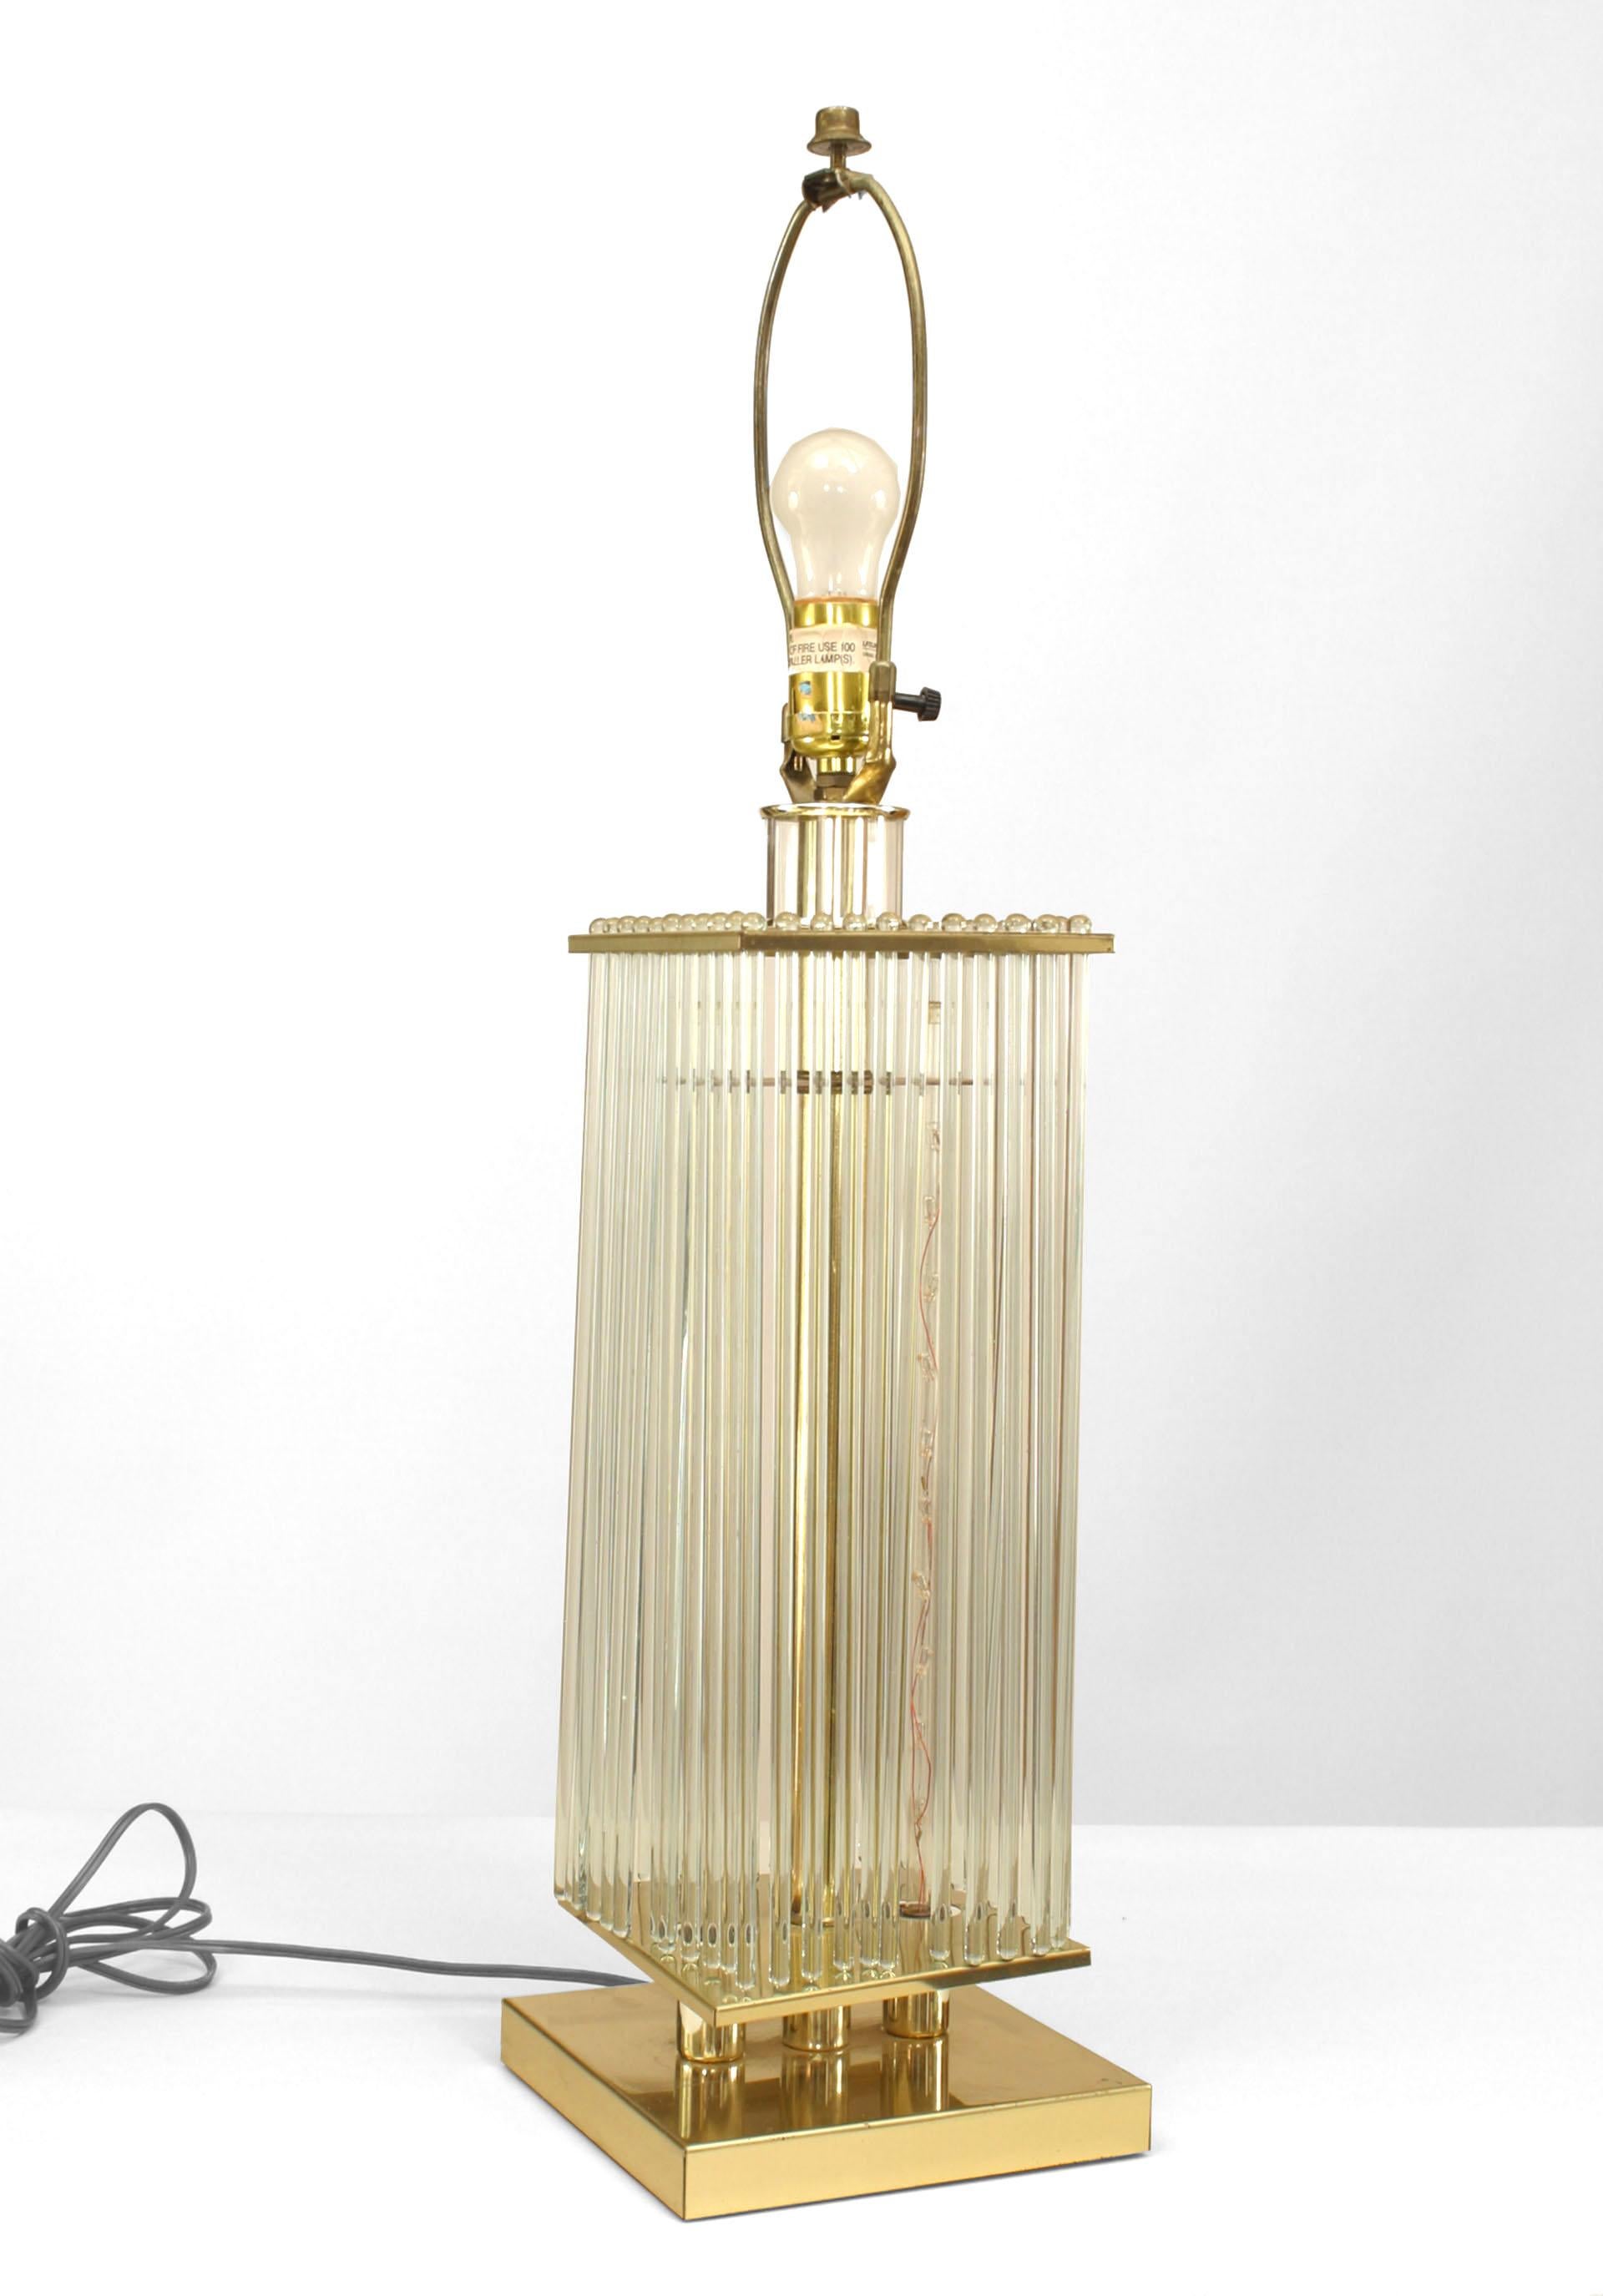 Lampe de table de design contemporain avec une base carrée en laiton sous des tiges en verre tubulaire transparent entourant un poteau central en laiton et deux tiges internes en verre avec des lumières.
   